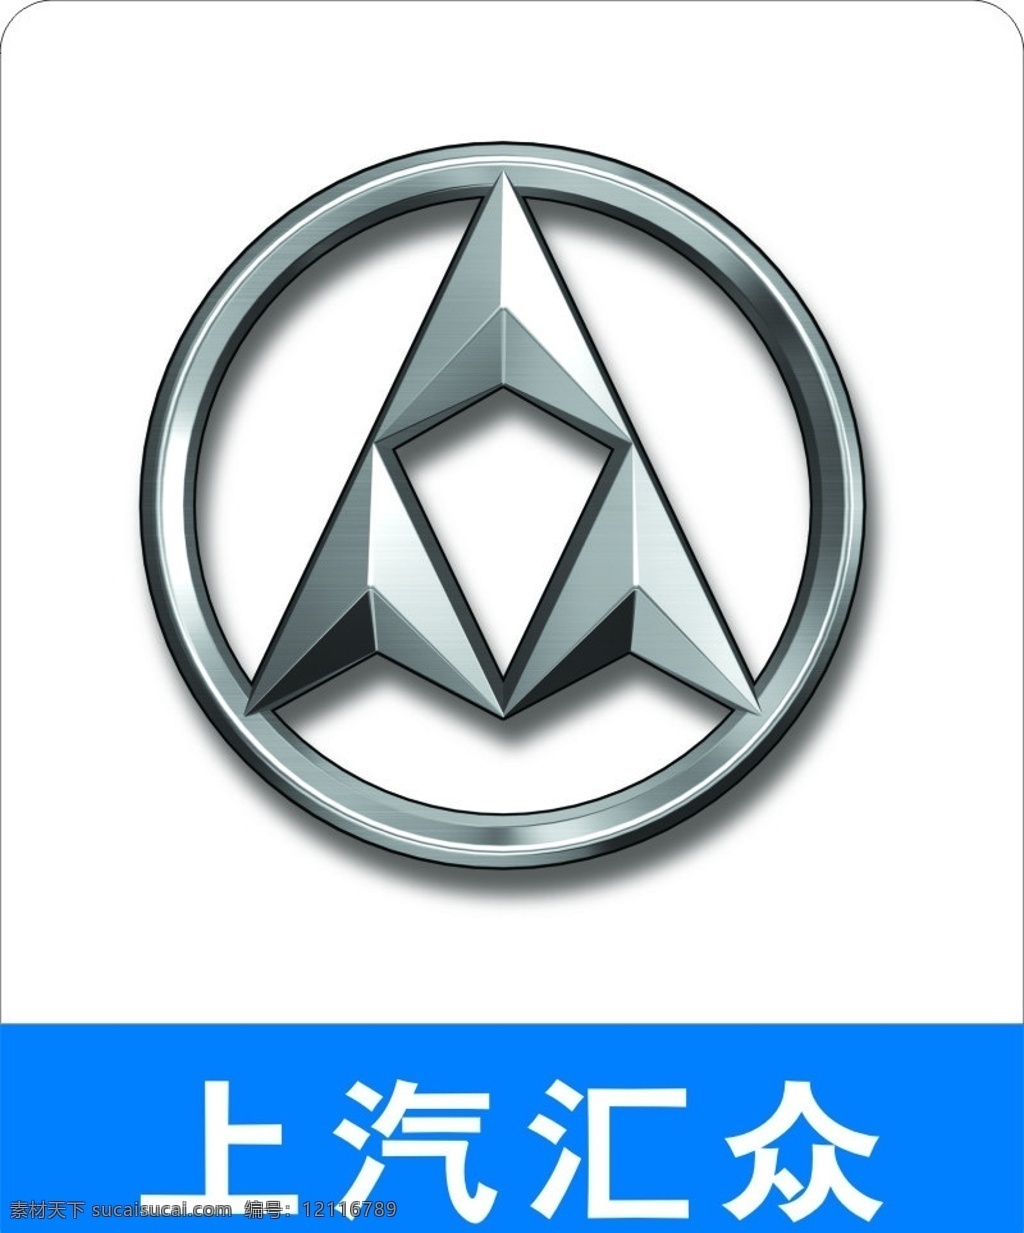 上海 汇众 汽车 公司 矢量 logo 上海汇众 上汽汇众 企业 标志 标识标志图标